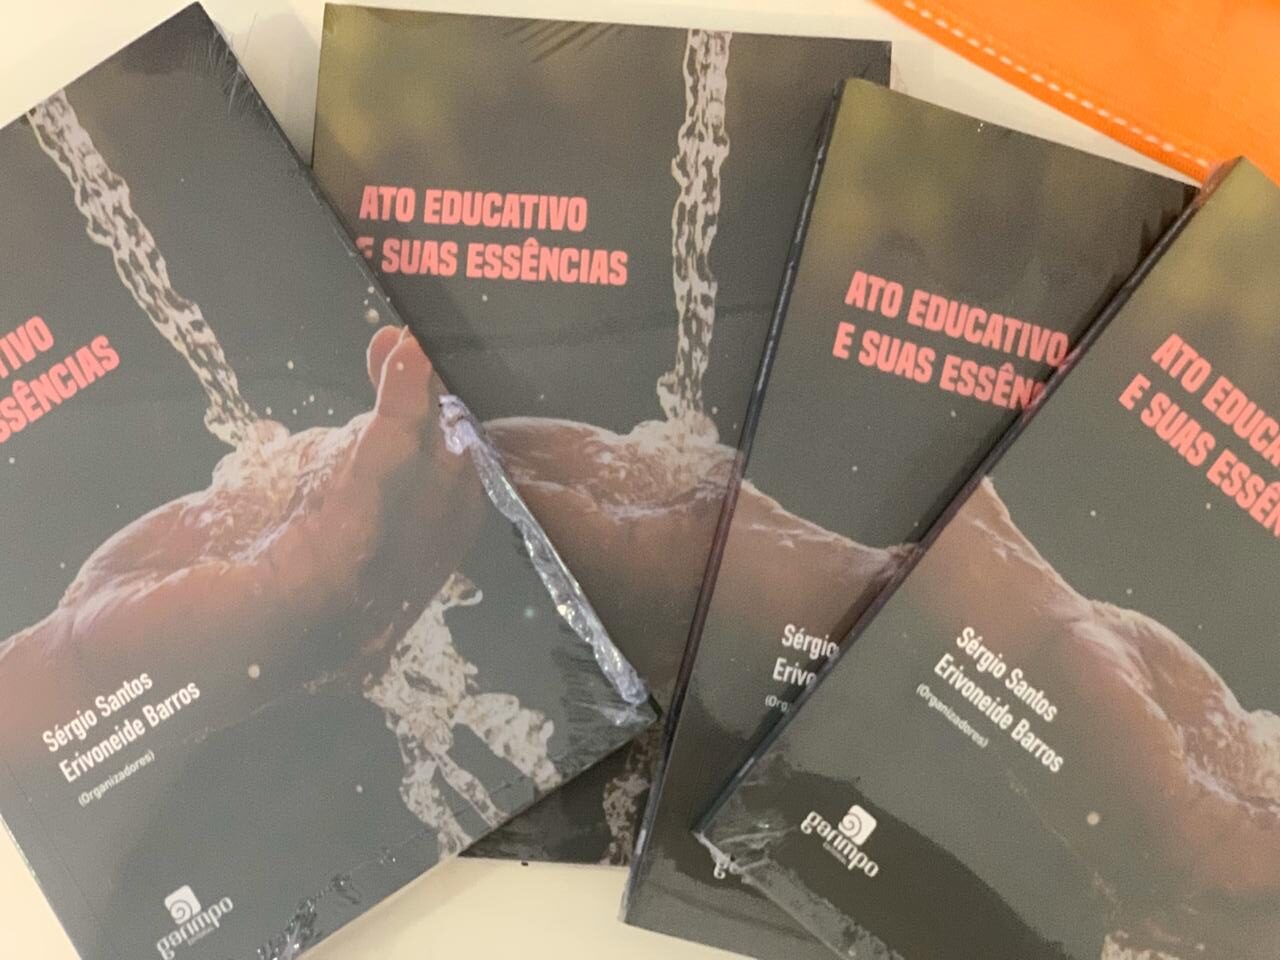 Educadores de São Caetano lançam livro sobre ato educativo